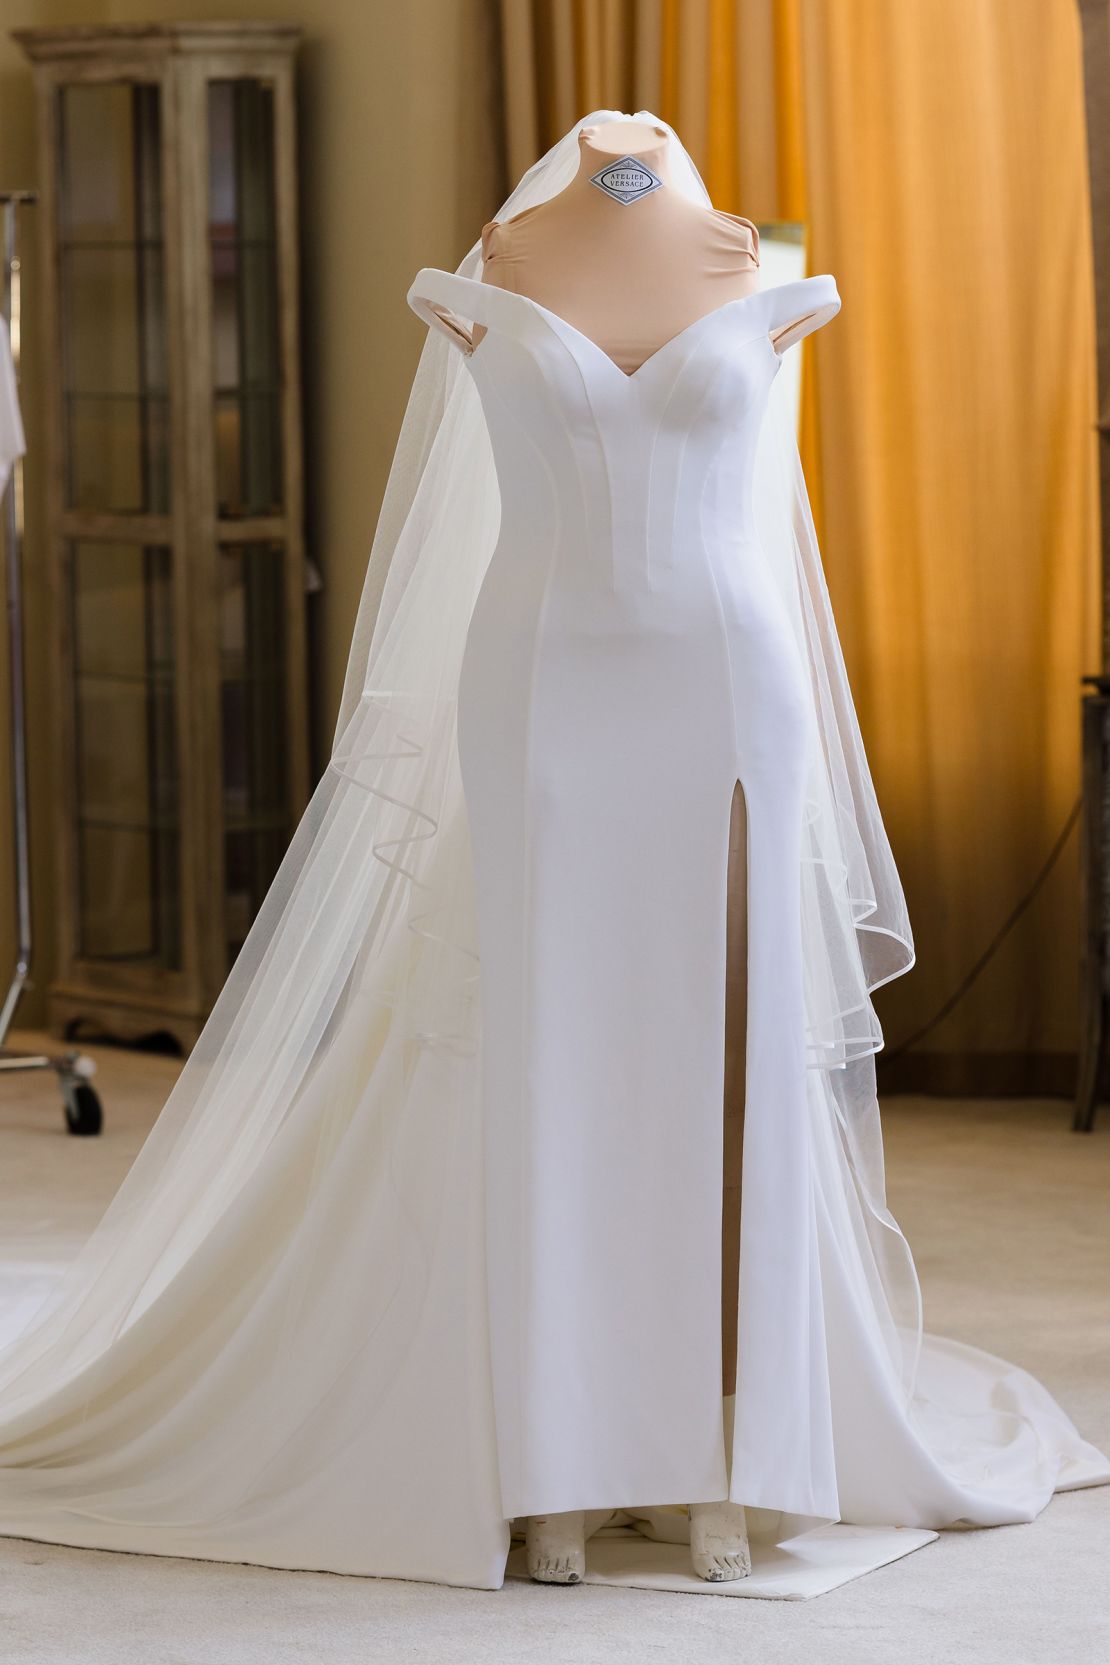 Britney Spears wears elegant Versace gown to wed Sam Asghari